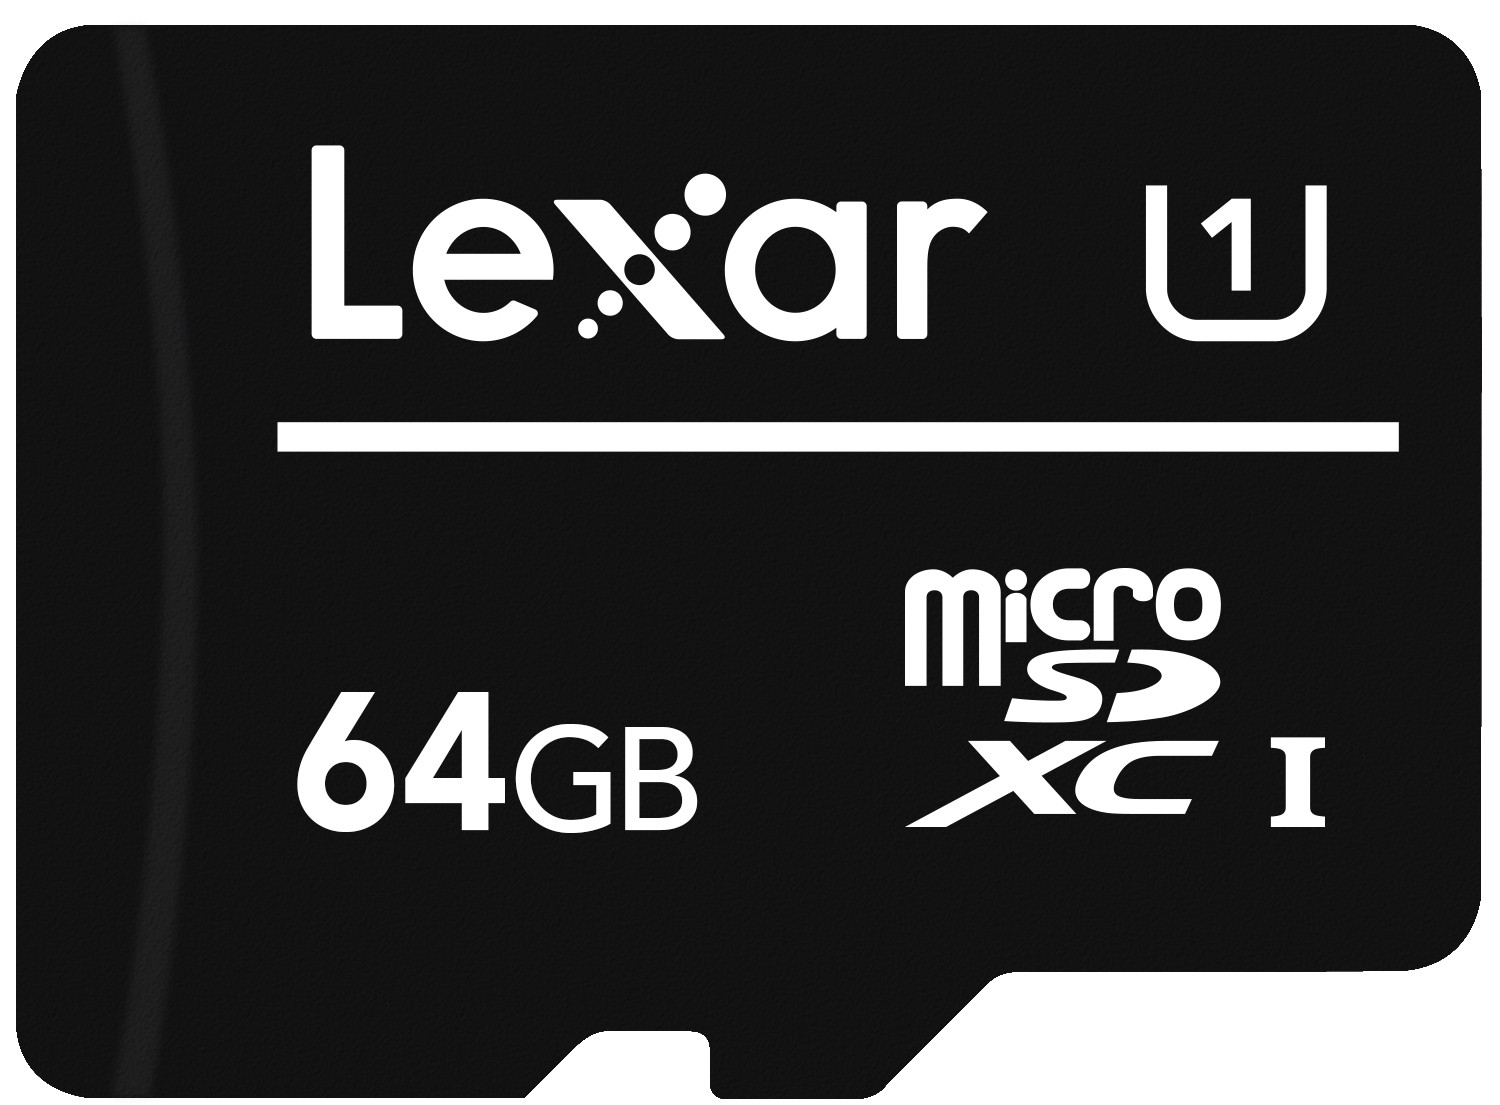 Lexar 932828 memoria flash 64 GB MicroSDXC UHS-I Classe 10